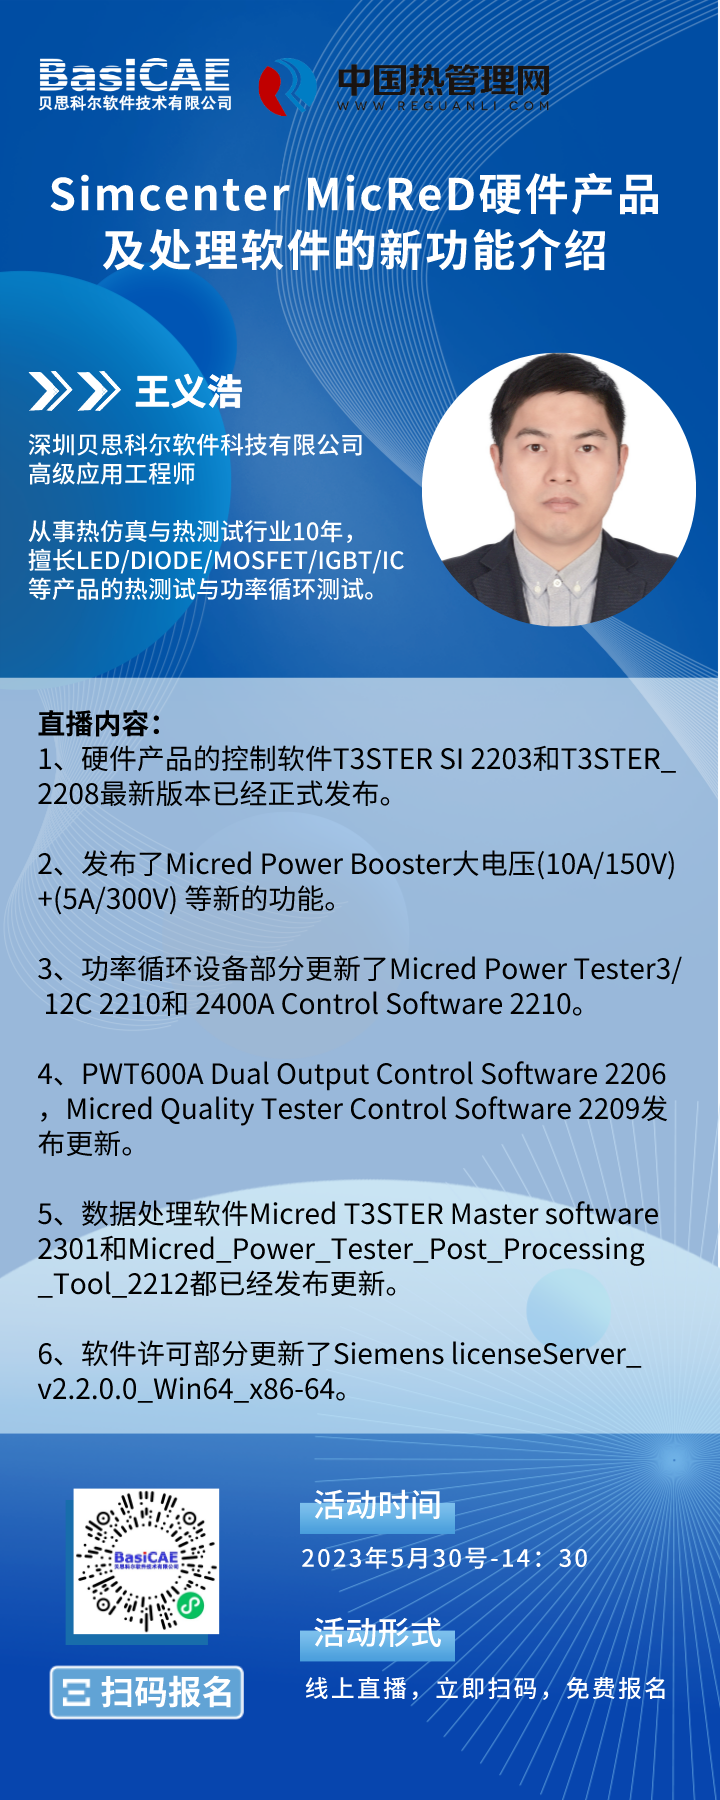 【线上活动】Simcenter MicReD硬件产品及处理软件的新功能介绍